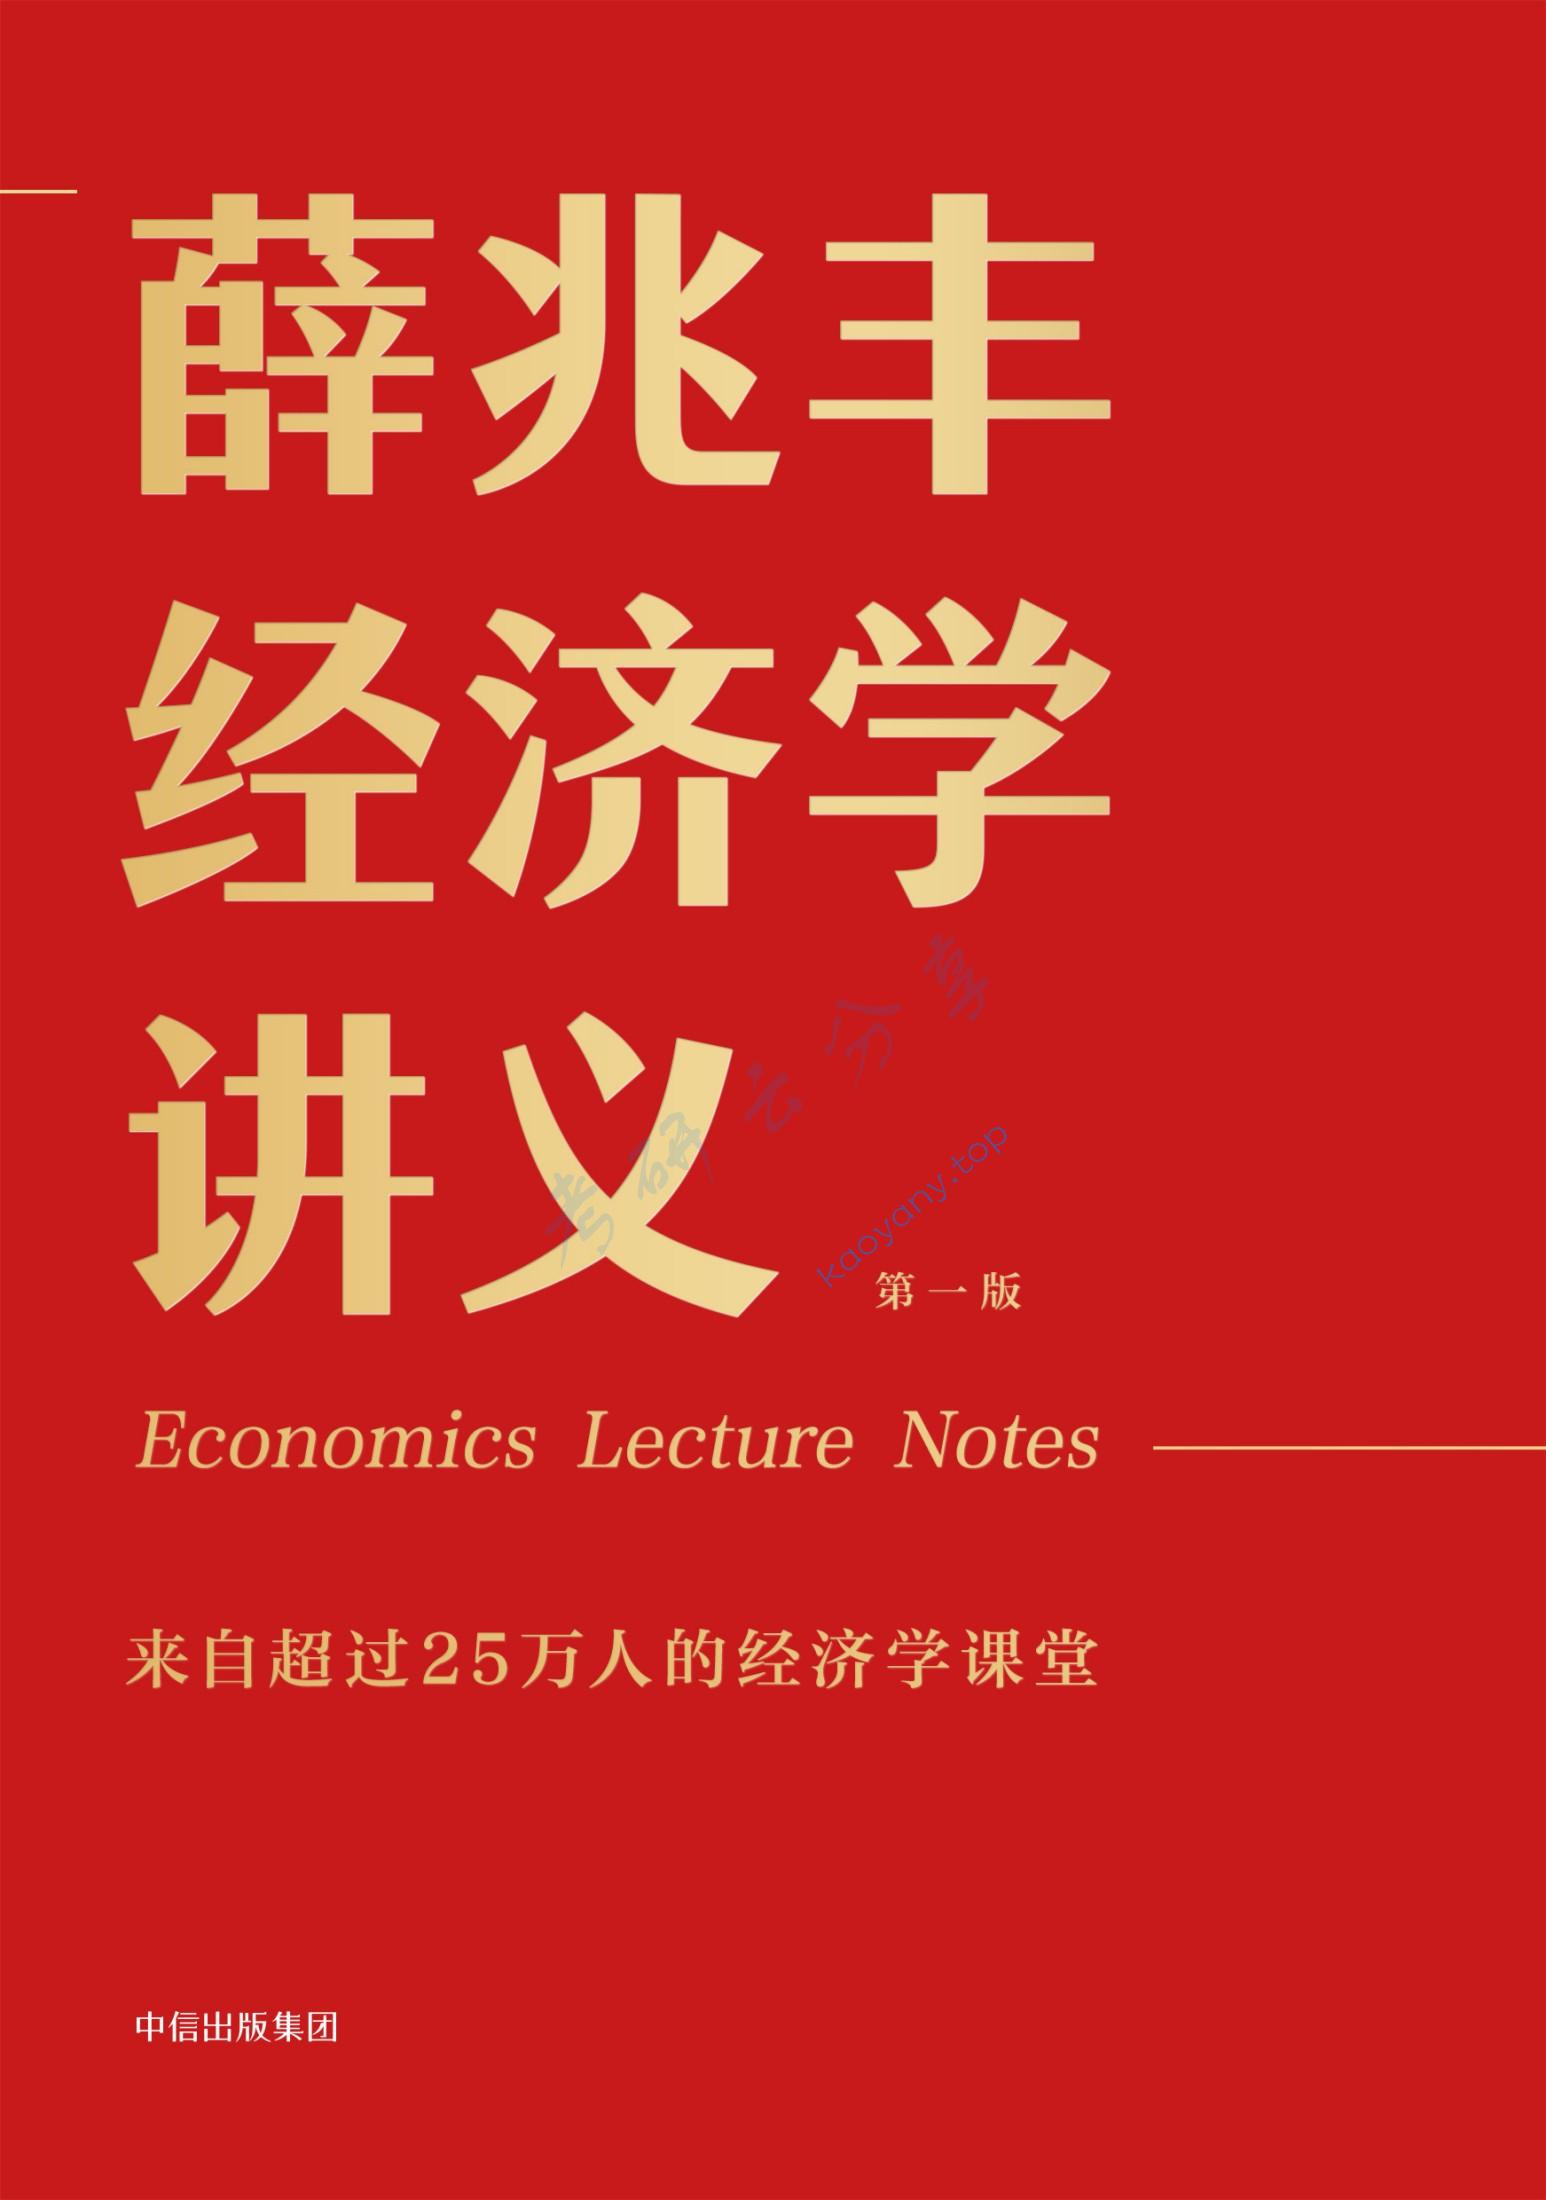 薛兆丰经济学讲义: 来自超过25万人的经济学课堂,第1张